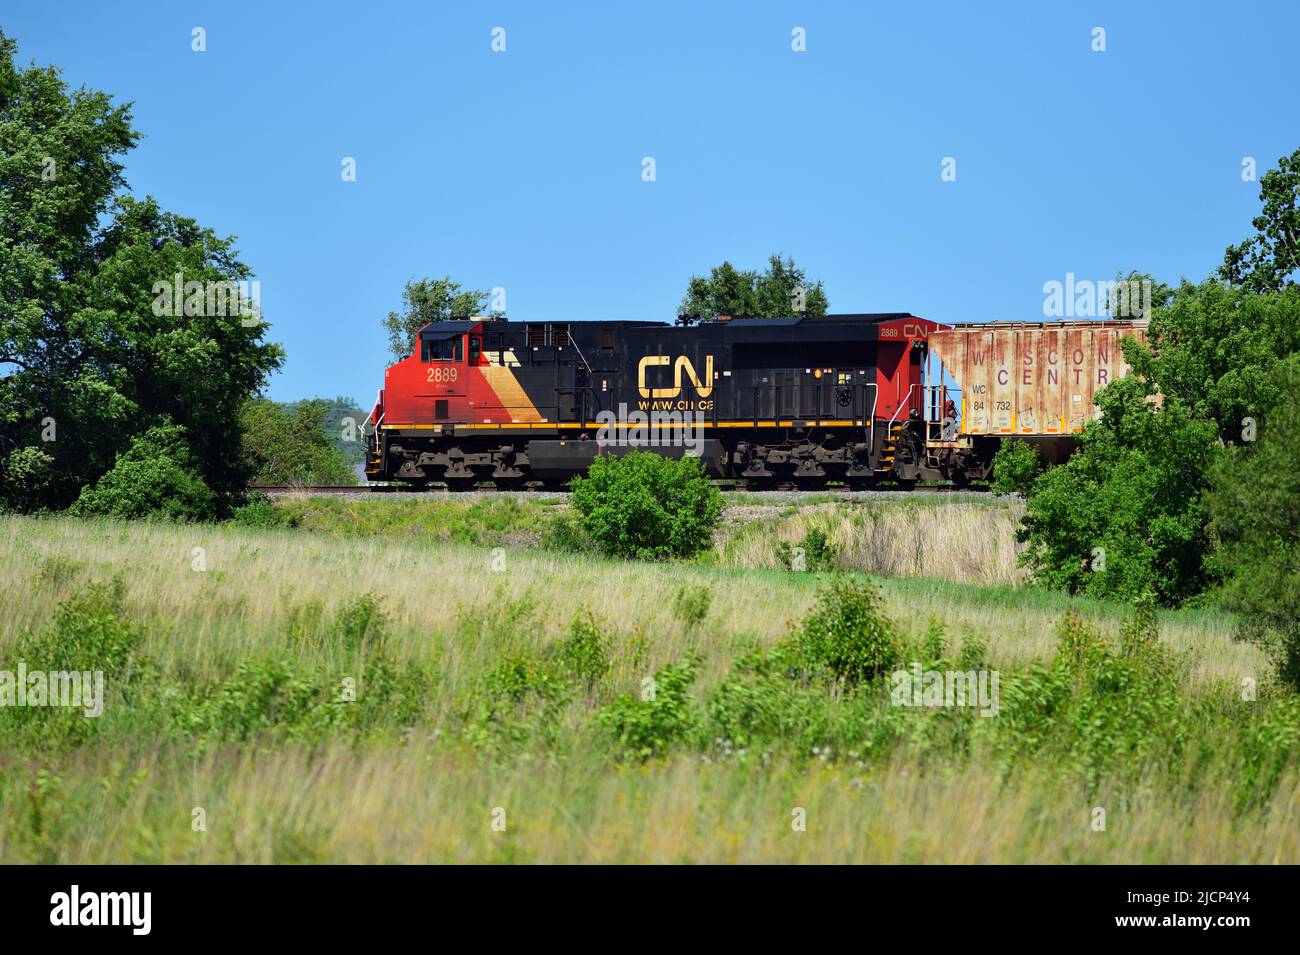 Wayne, Illinois, Estados Unidos. Una locomotora del Ferrocarril Nacional Canadiense conduce un tren de carga a través de una sección rural del noreste de Illinois. Foto de stock